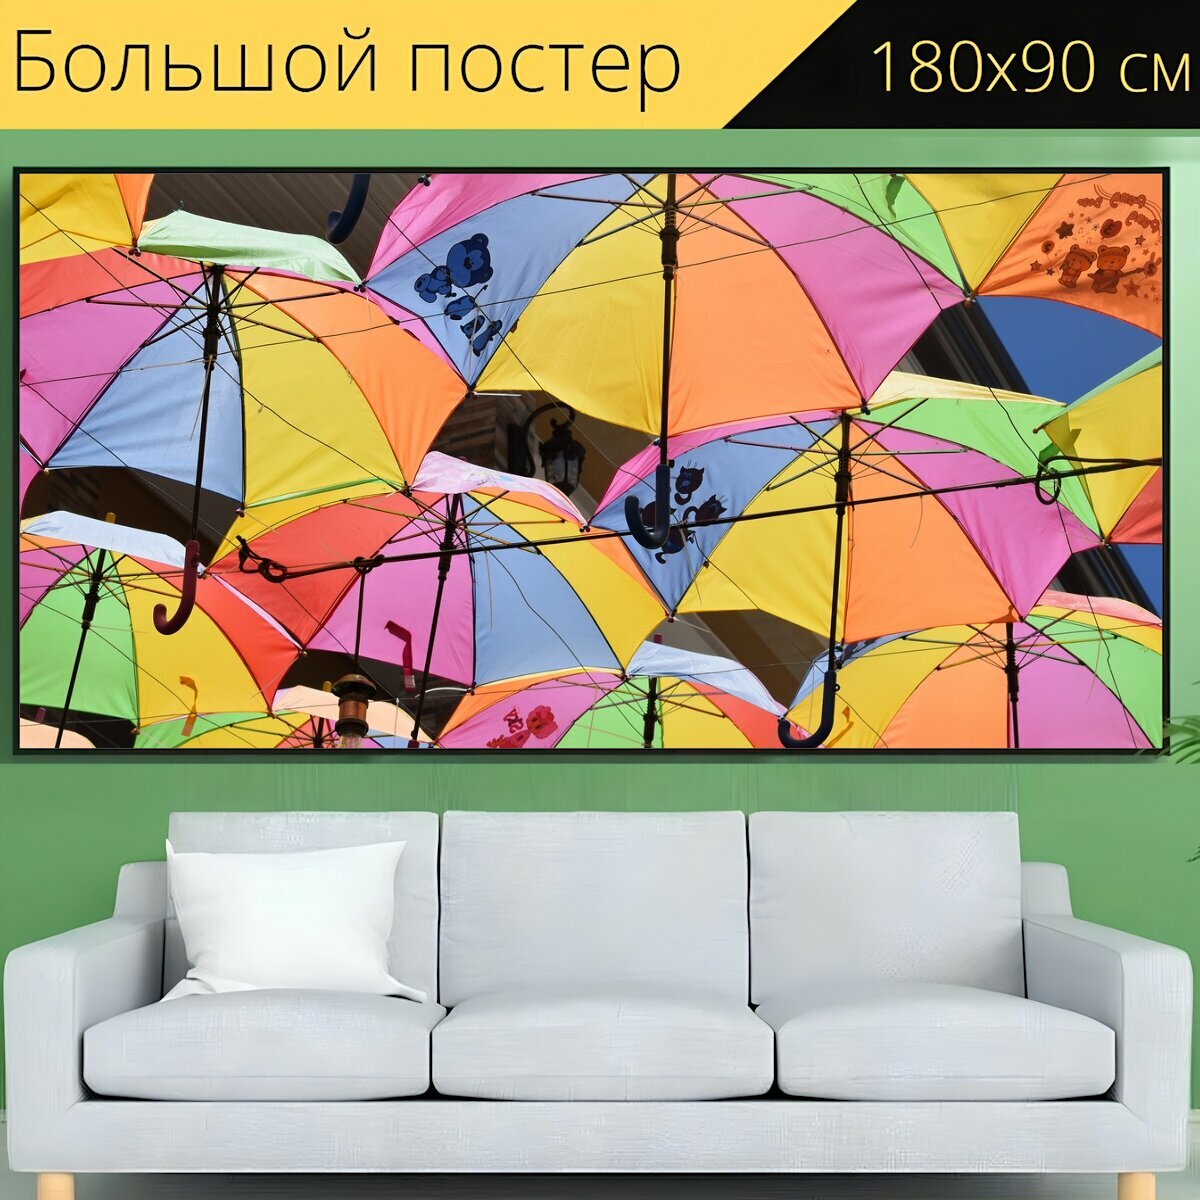 Большой постер "Солнечный свет, зонты, зонтики" 180 x 90 см. для интерьера